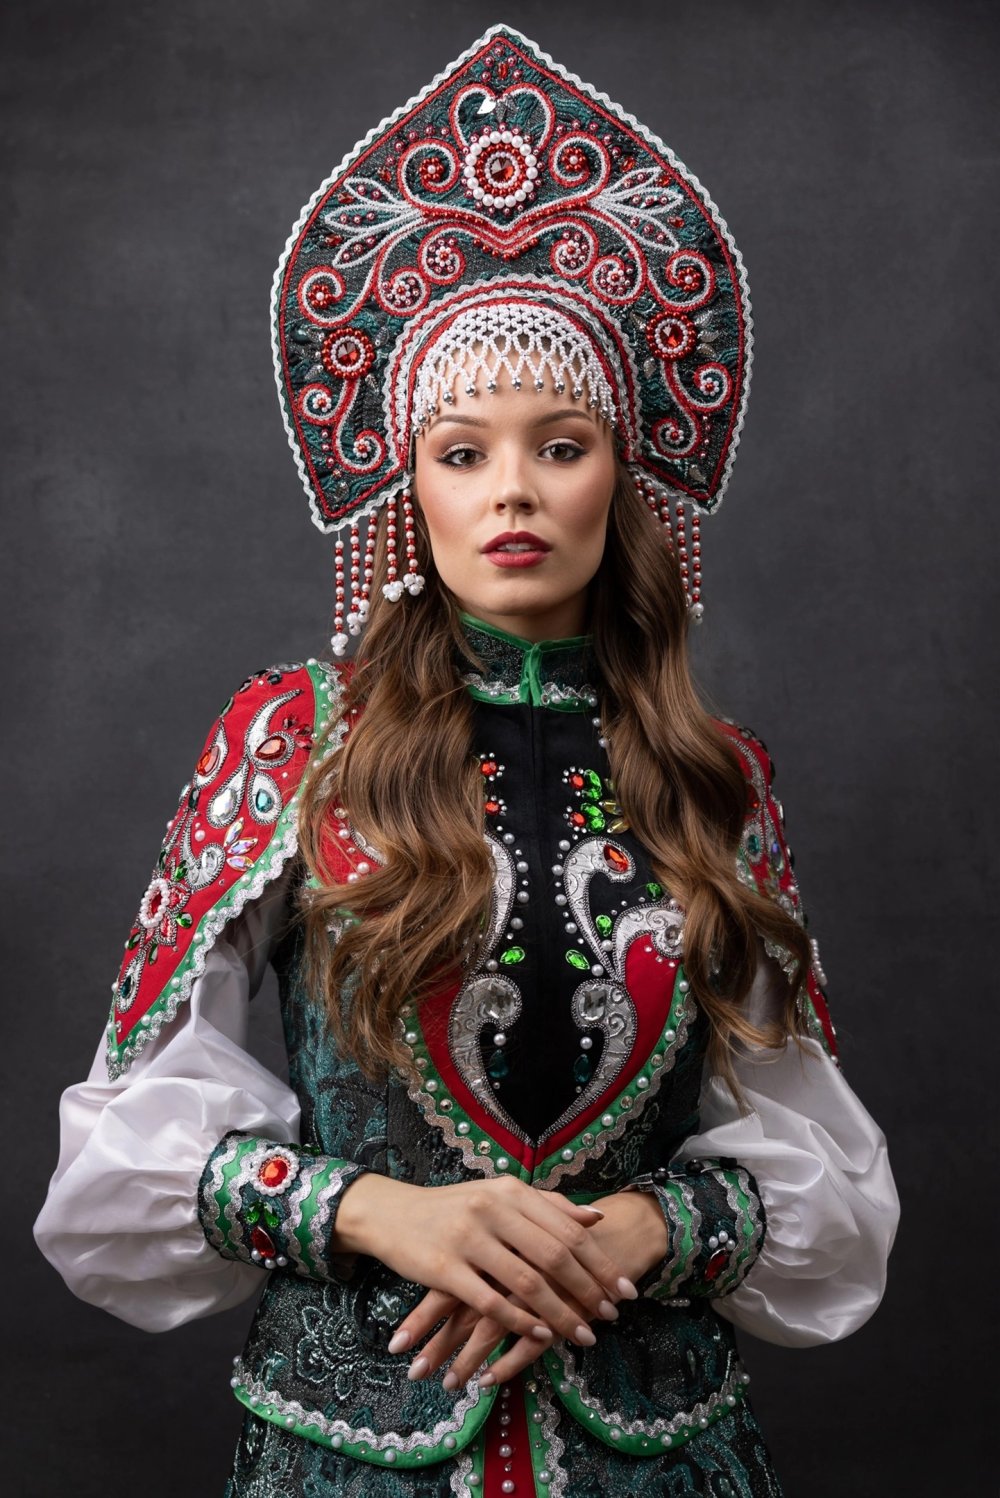 Студентка из Химок стала победительницей конкурса «Мисс Россия - 2023»